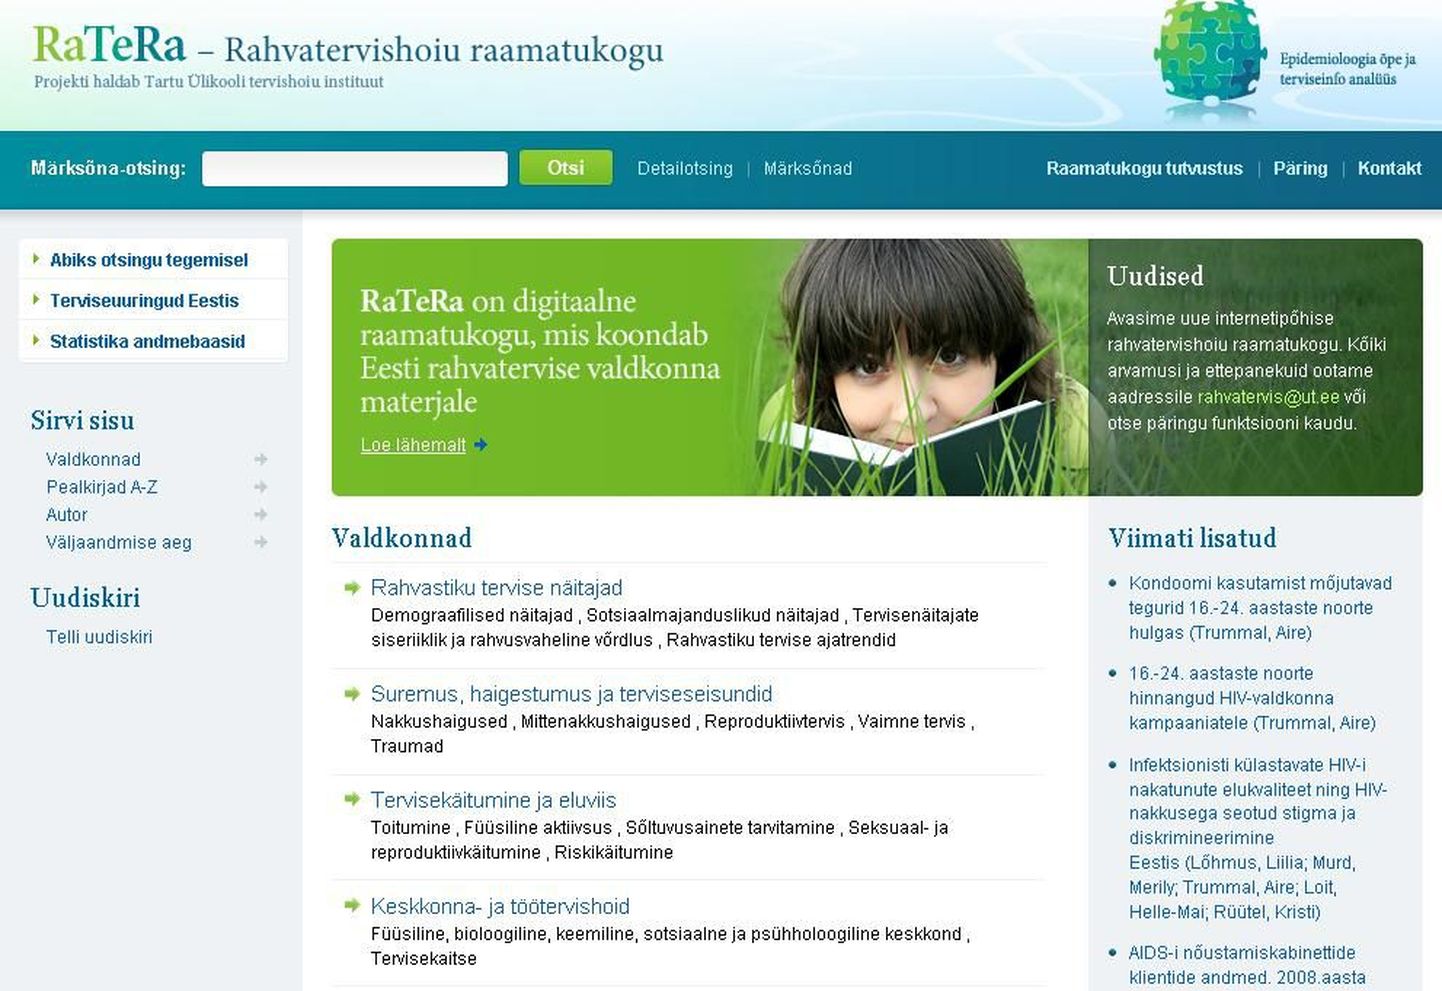 Rahvatervishoiu raamatukokku on koondatud Eestis valminud tervise valdkonna publikatsioonid, mis on ilmunud alates 2000. aastast.